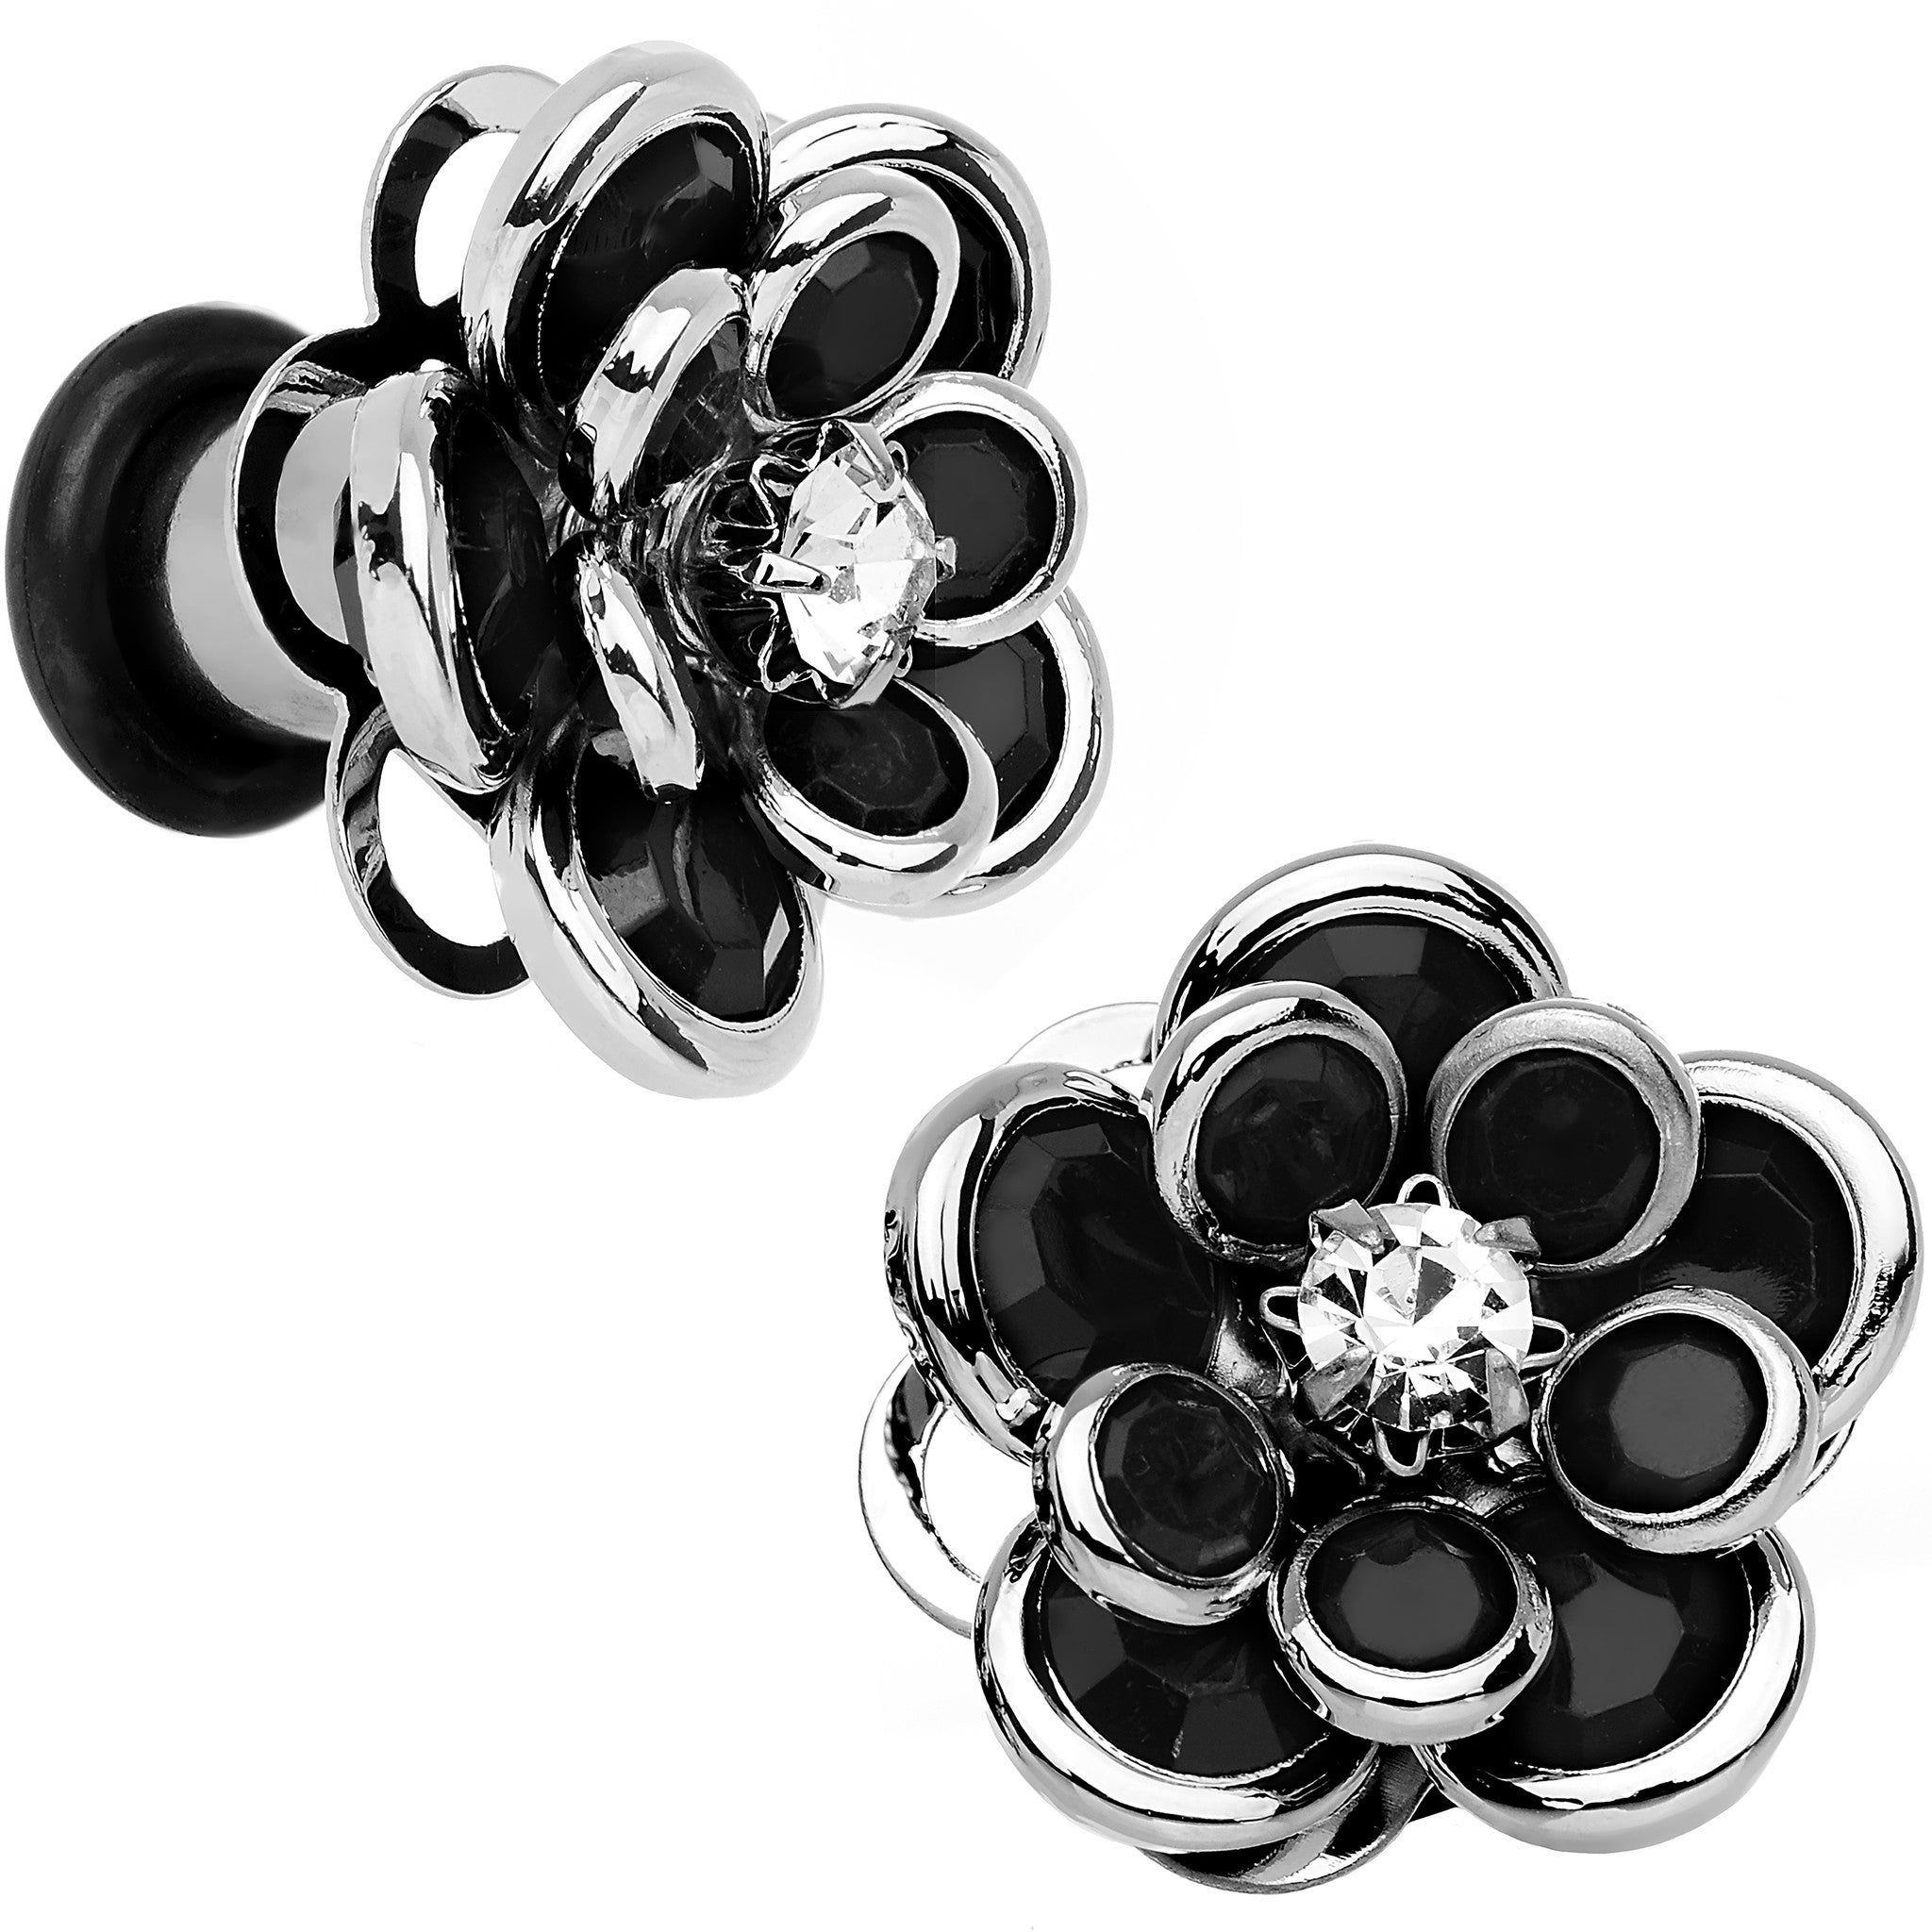 2 Gauge Black Blooming Glam Gardenia Flower Steel Plug Pair